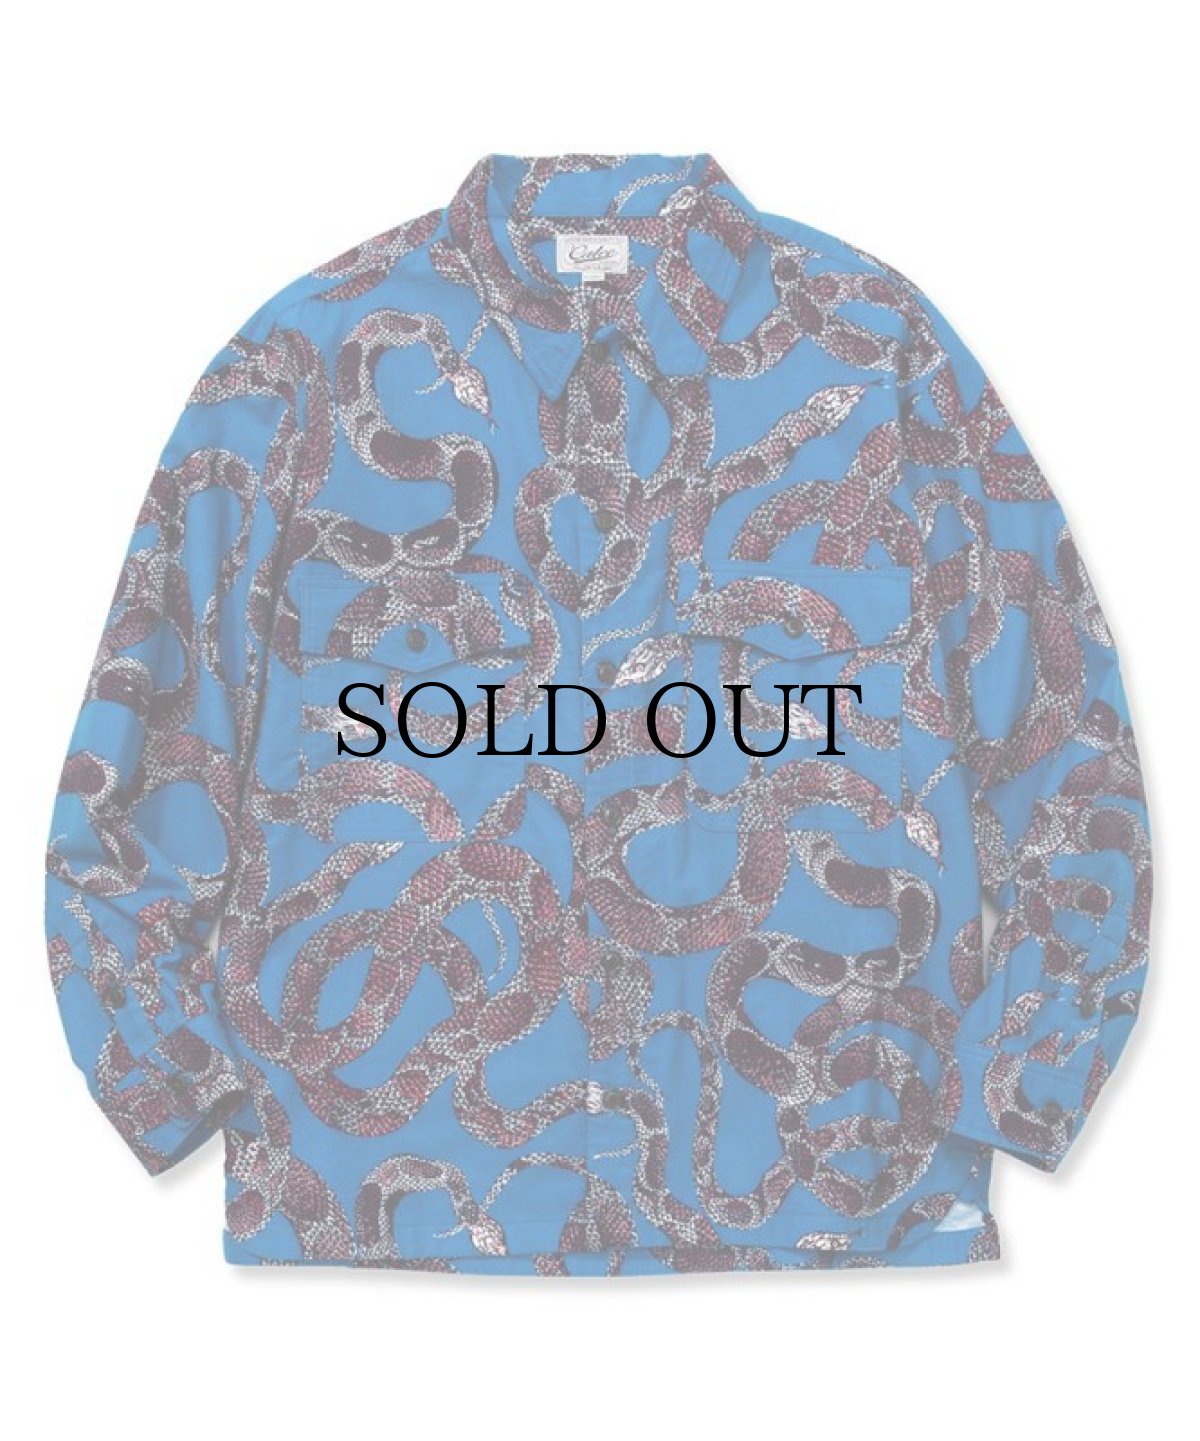 画像1: CALEE / Allover snake pattern over silhouette shirt jacket -BLUE- (1)